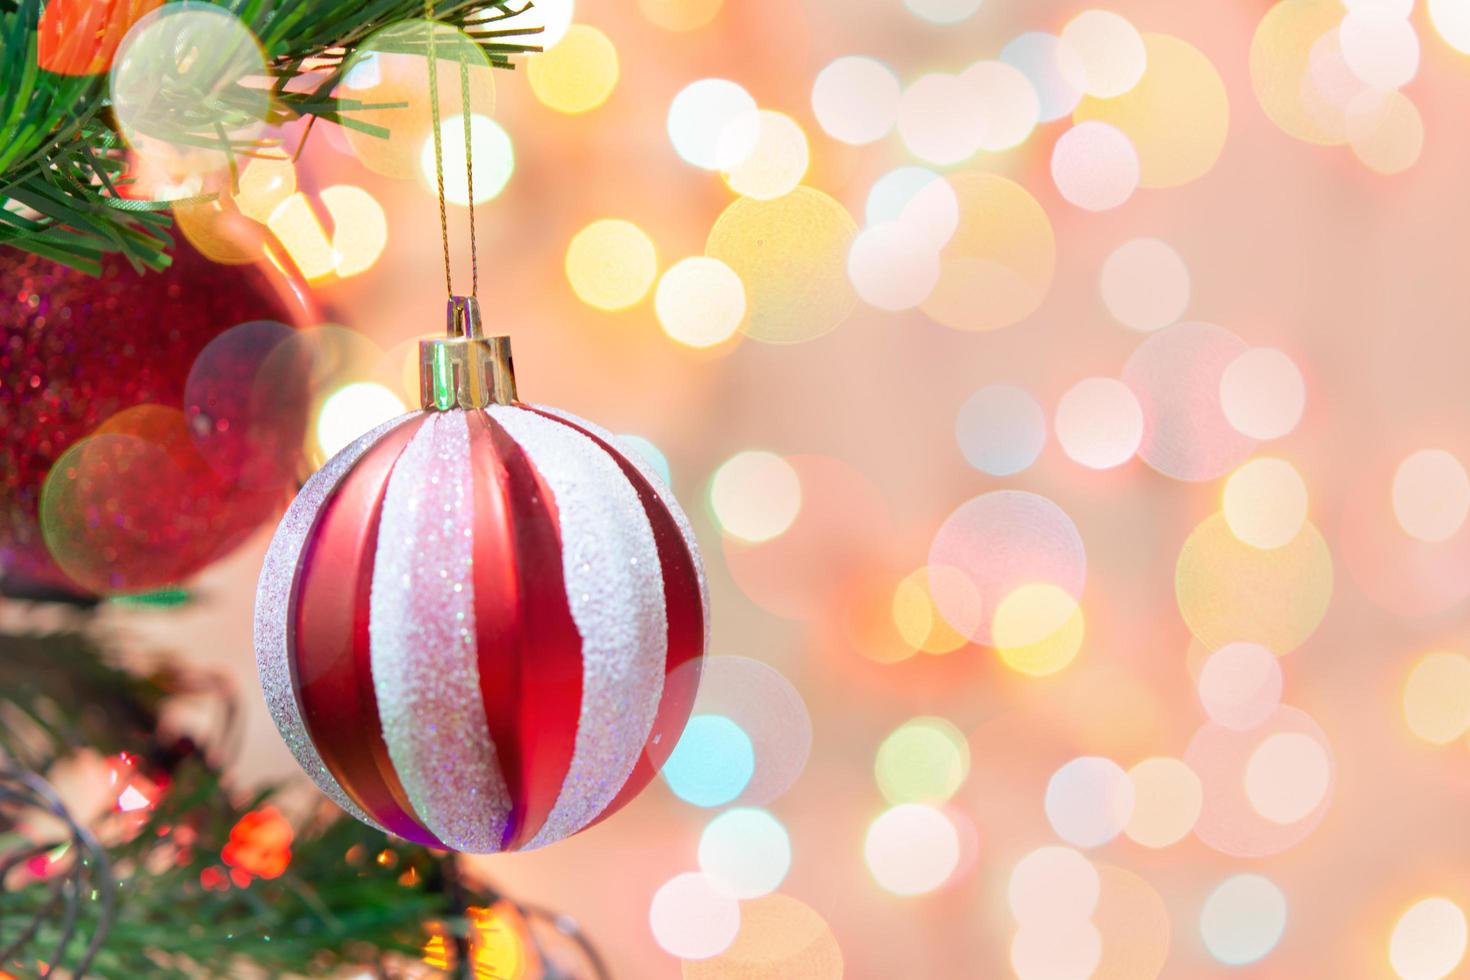 décoration de Noël. boules rouges accrochées aux branches de pin guirlande d'arbre de noël et ornements sur fond abstrait bokeh with copy space photo